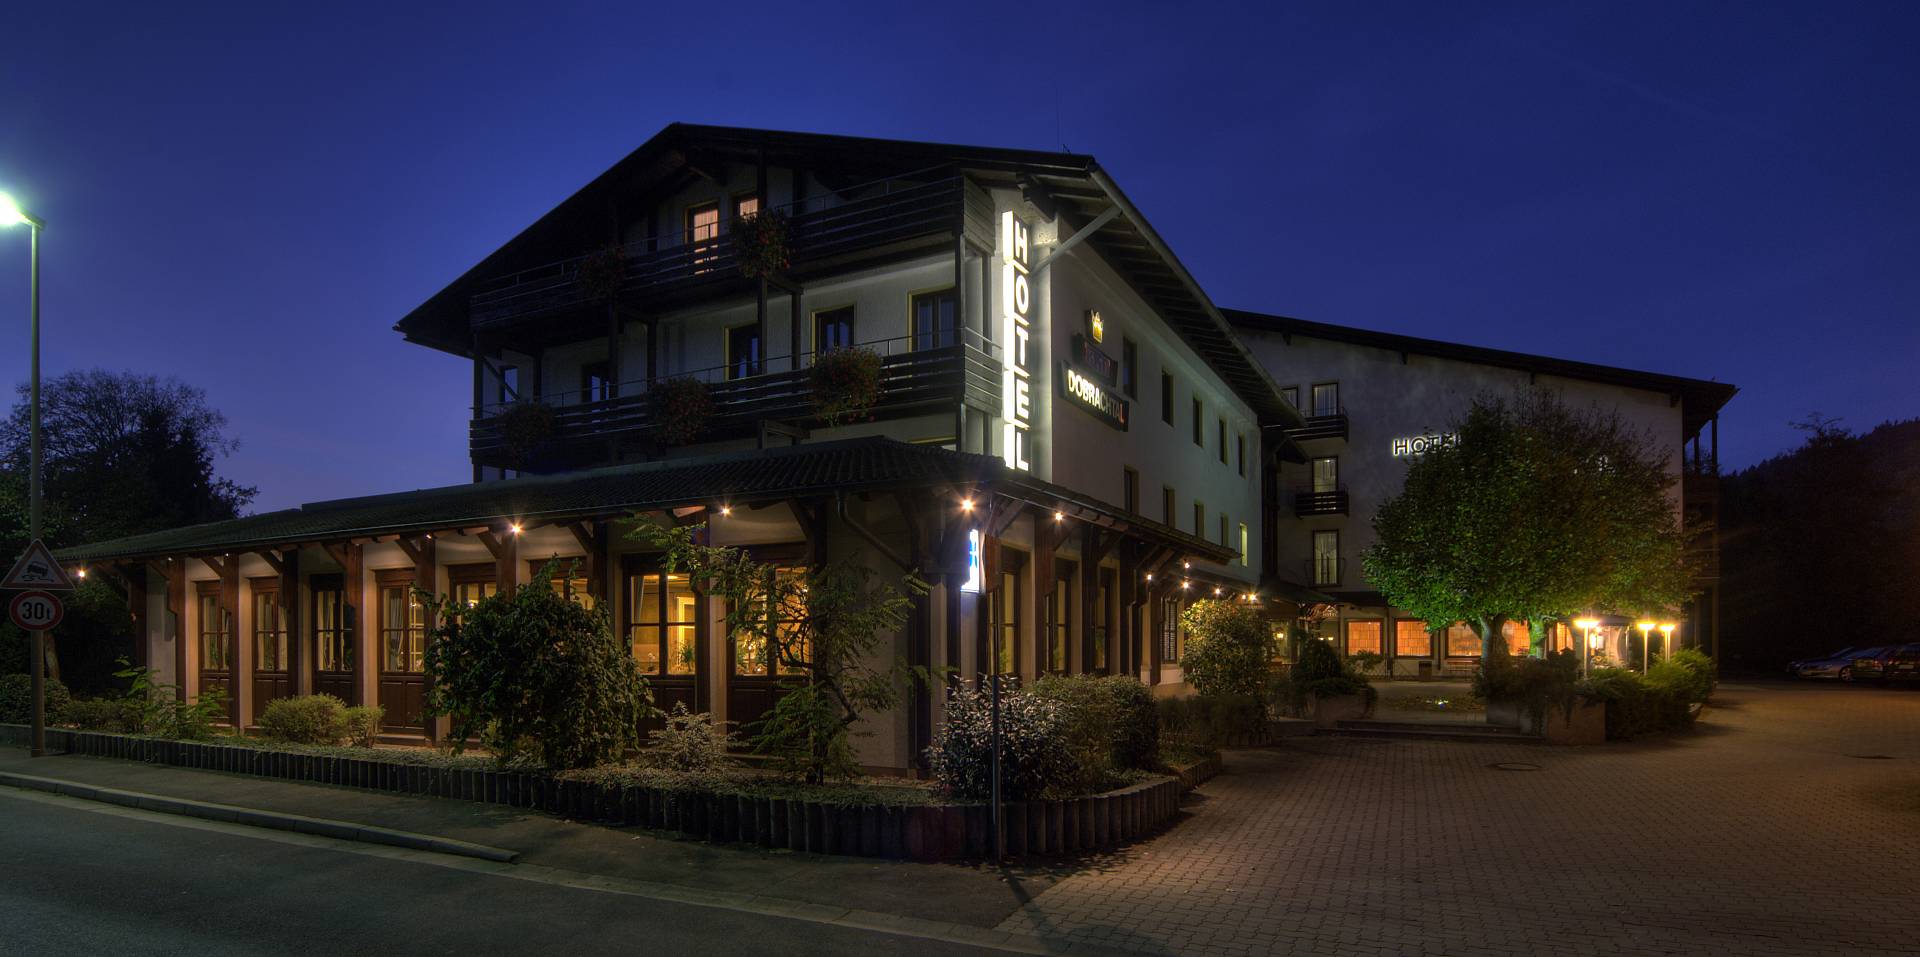 Das Hotel Dobrachtal bei Nacht mit Beleuchtung